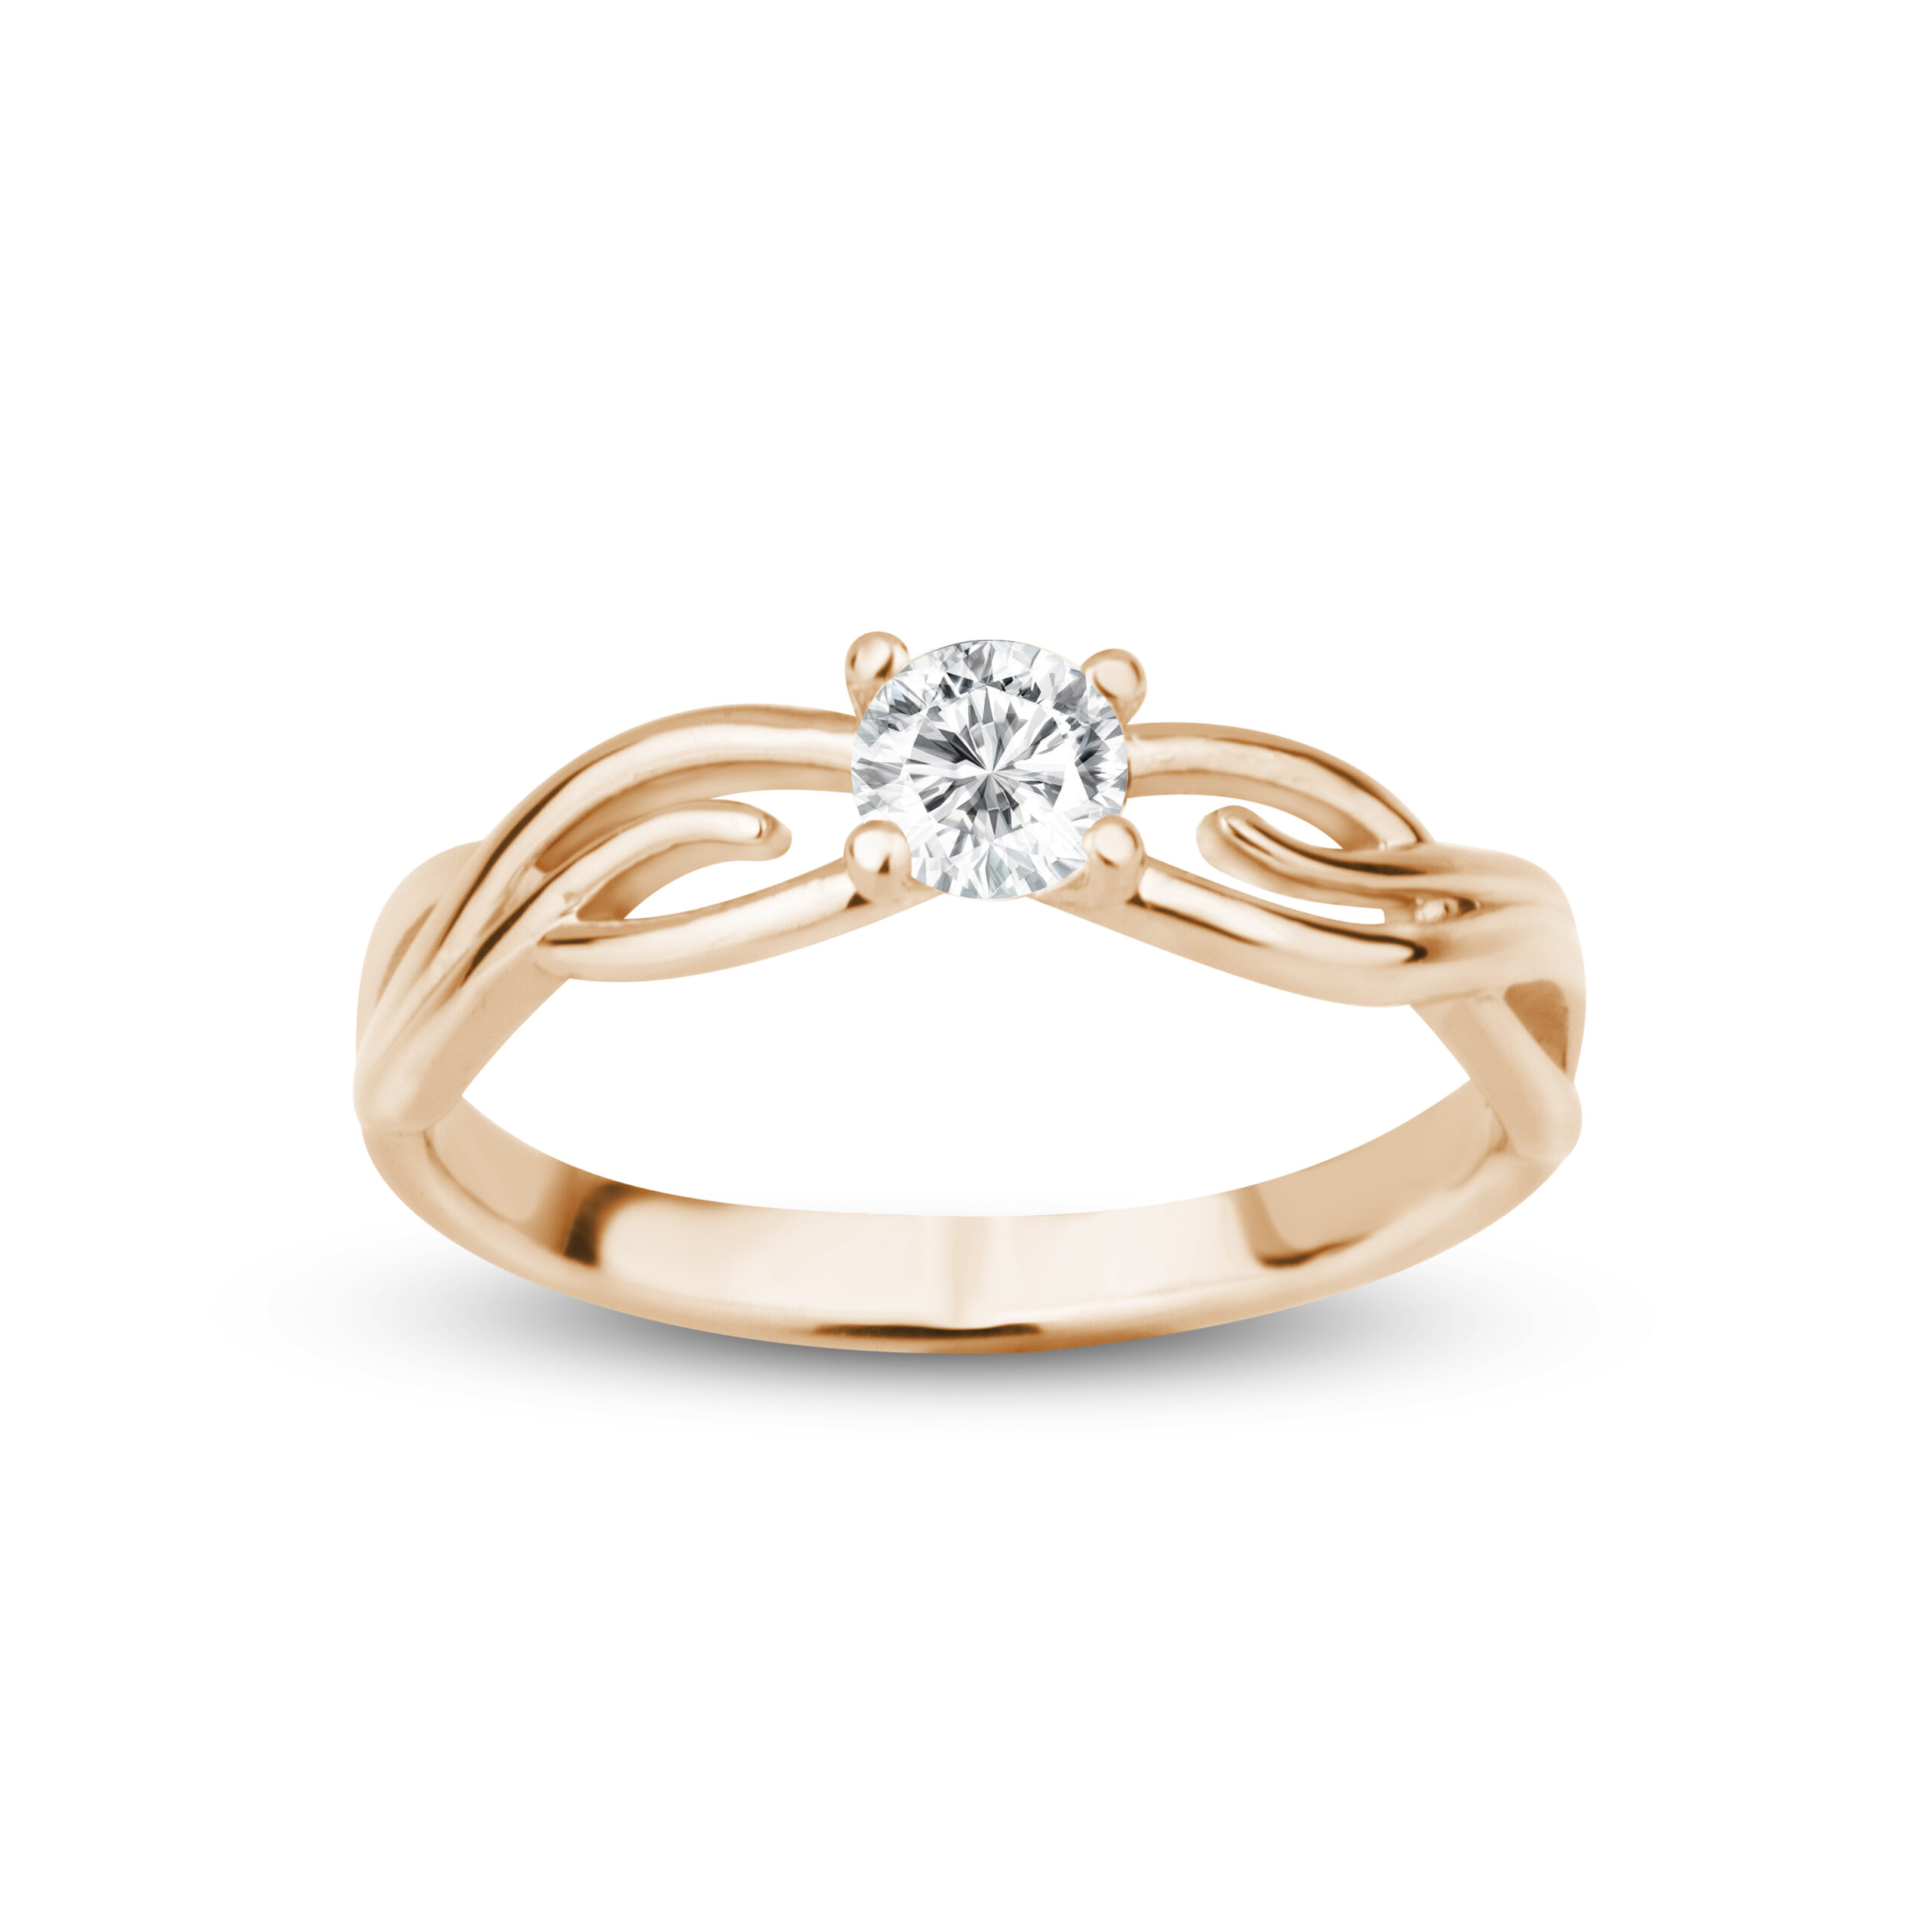 Zásnubní prsten značky FOX® 5 z růžového zlata, který je osazený jedním centrálním diamantem. shora